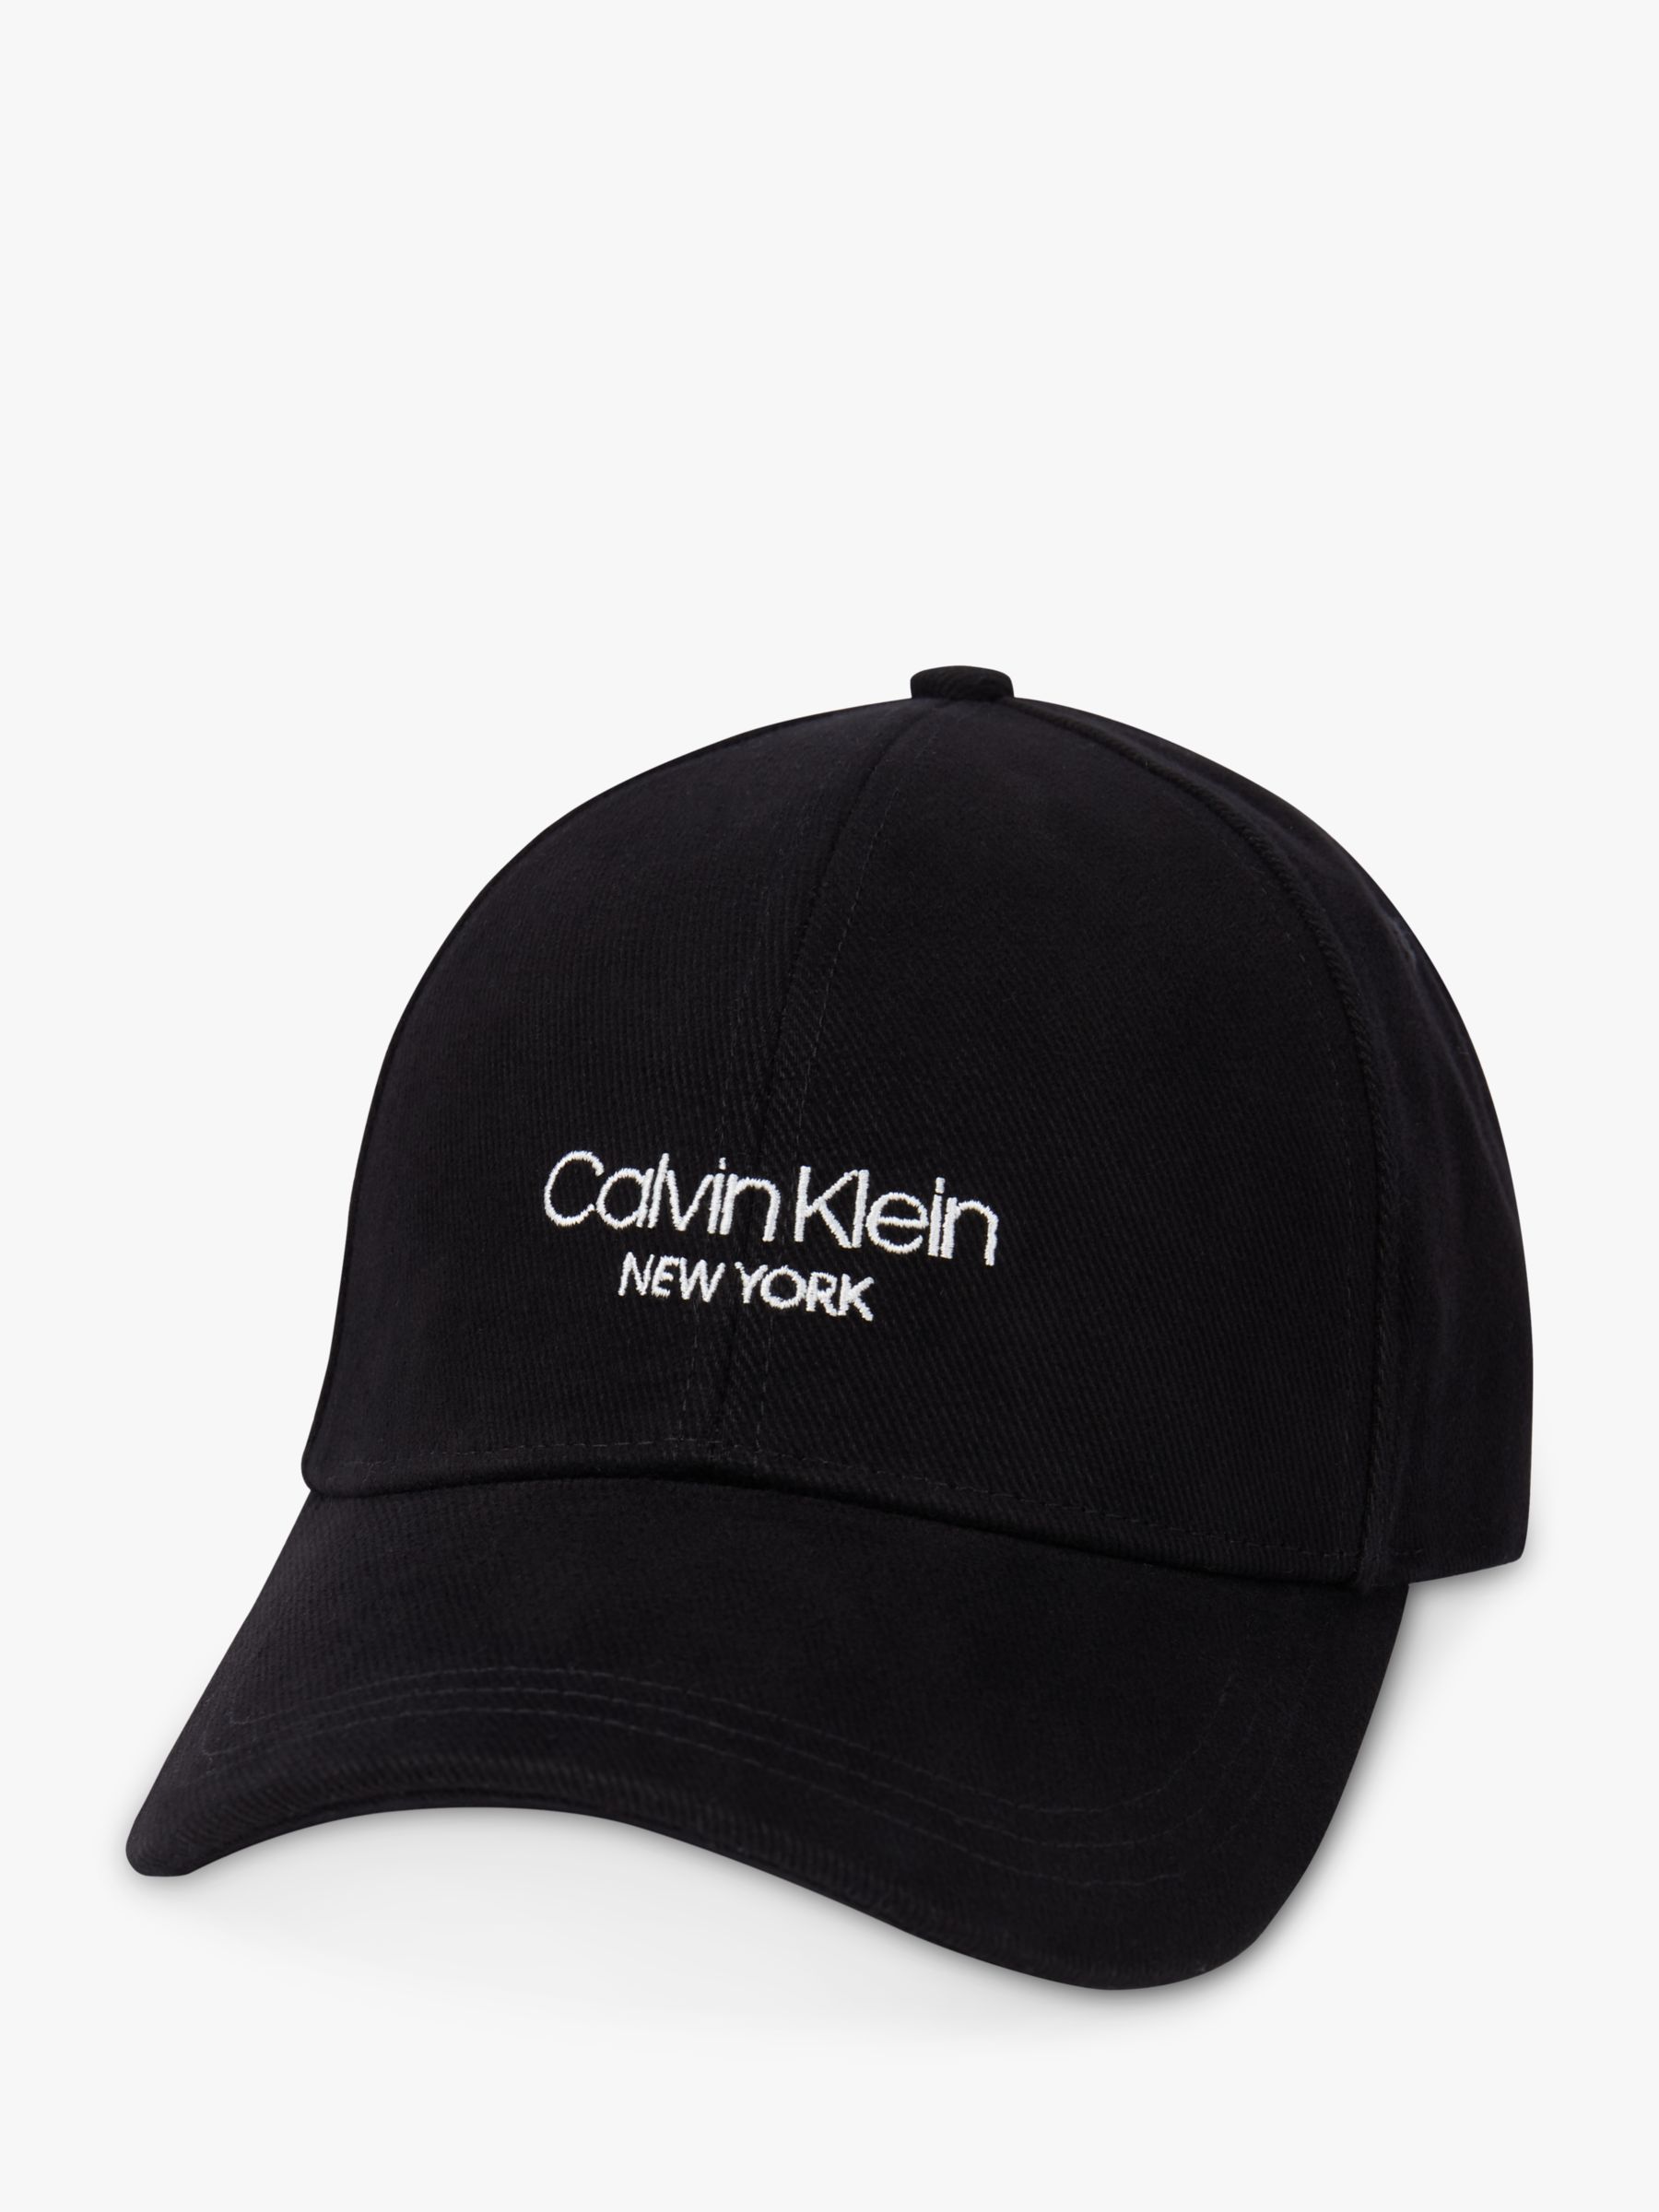 Calvin Klein Cotton Baseball Cap, One Size, Black